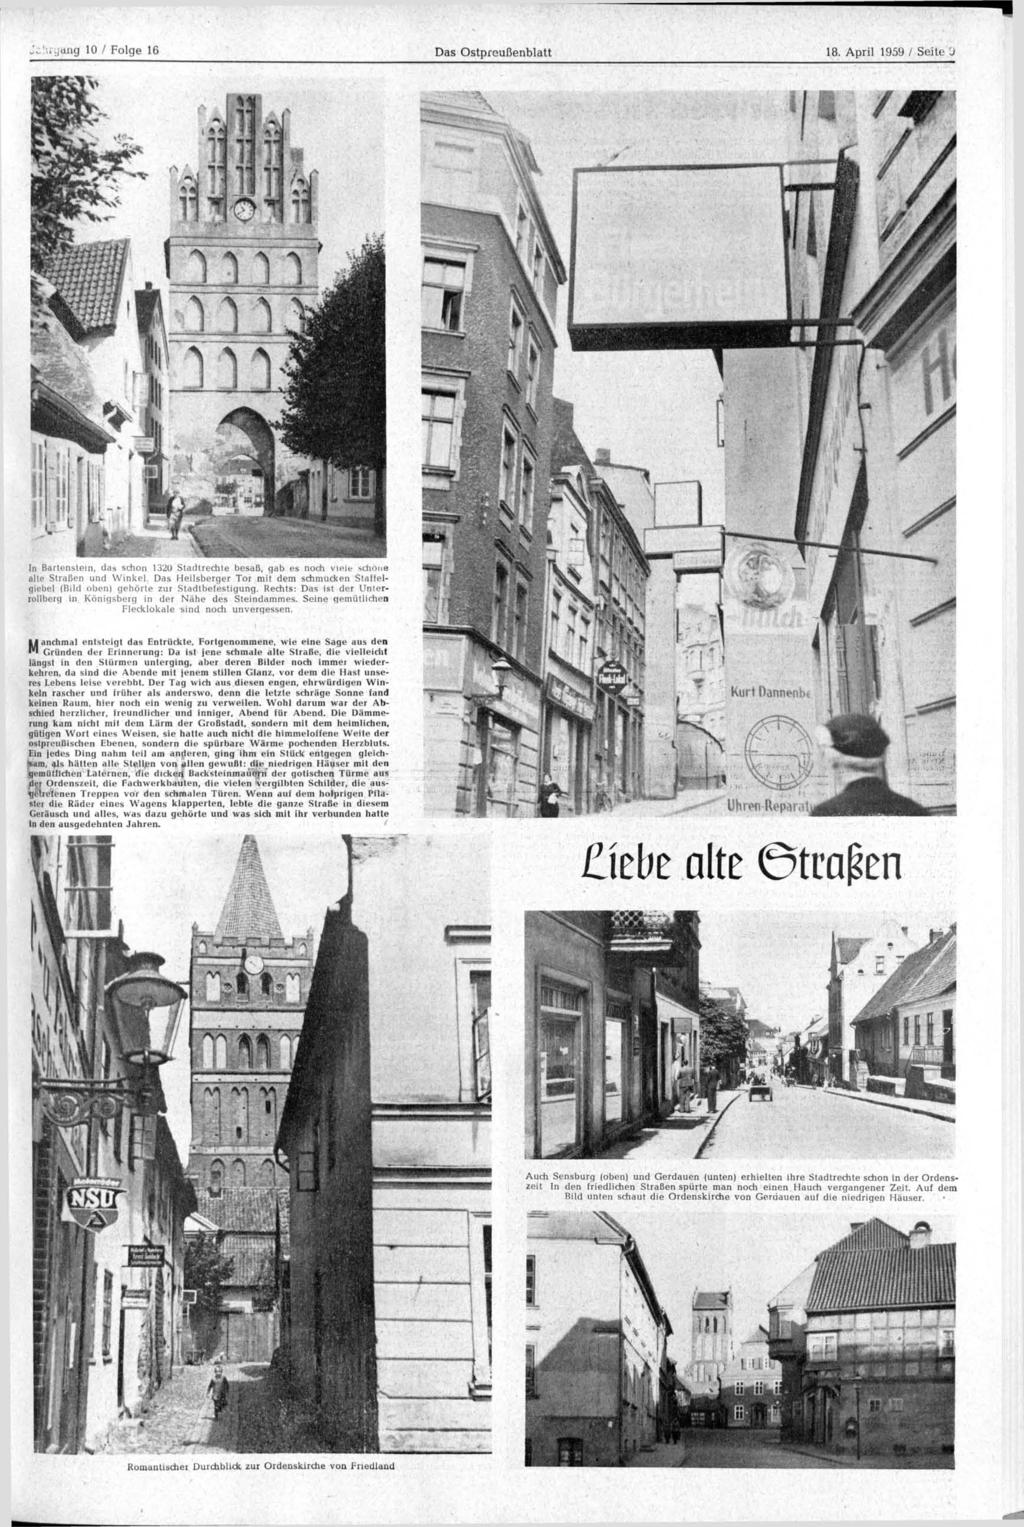 mg 10 / Folge 16 Das blatt 18. April 1959 / Seite Ü In Bartenstein, das schon 1320 Stadtrechte besaß, gab es noch viele schone alte Straßen und Winkel.